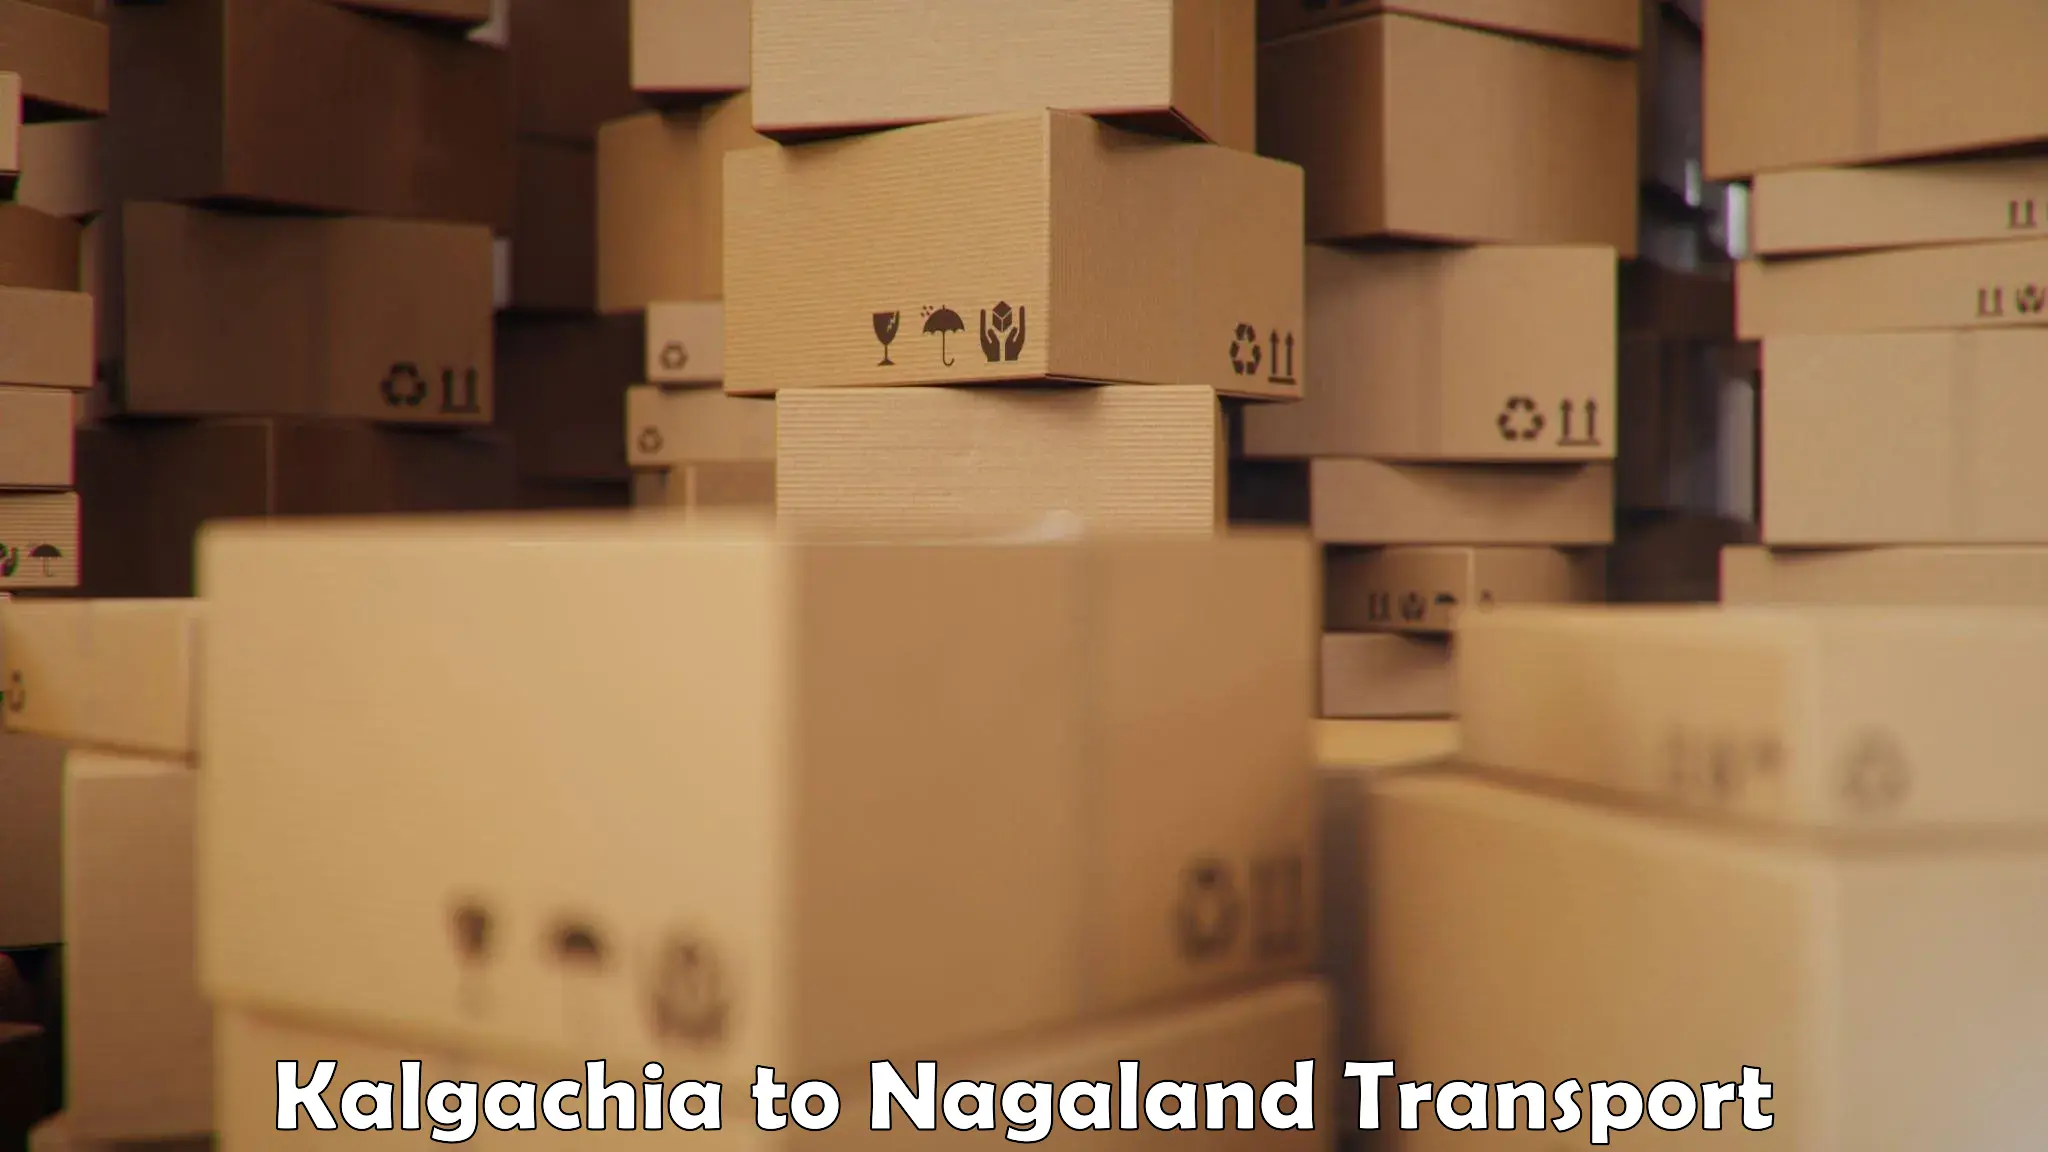 Express transport services Kalgachia to NIT Nagaland